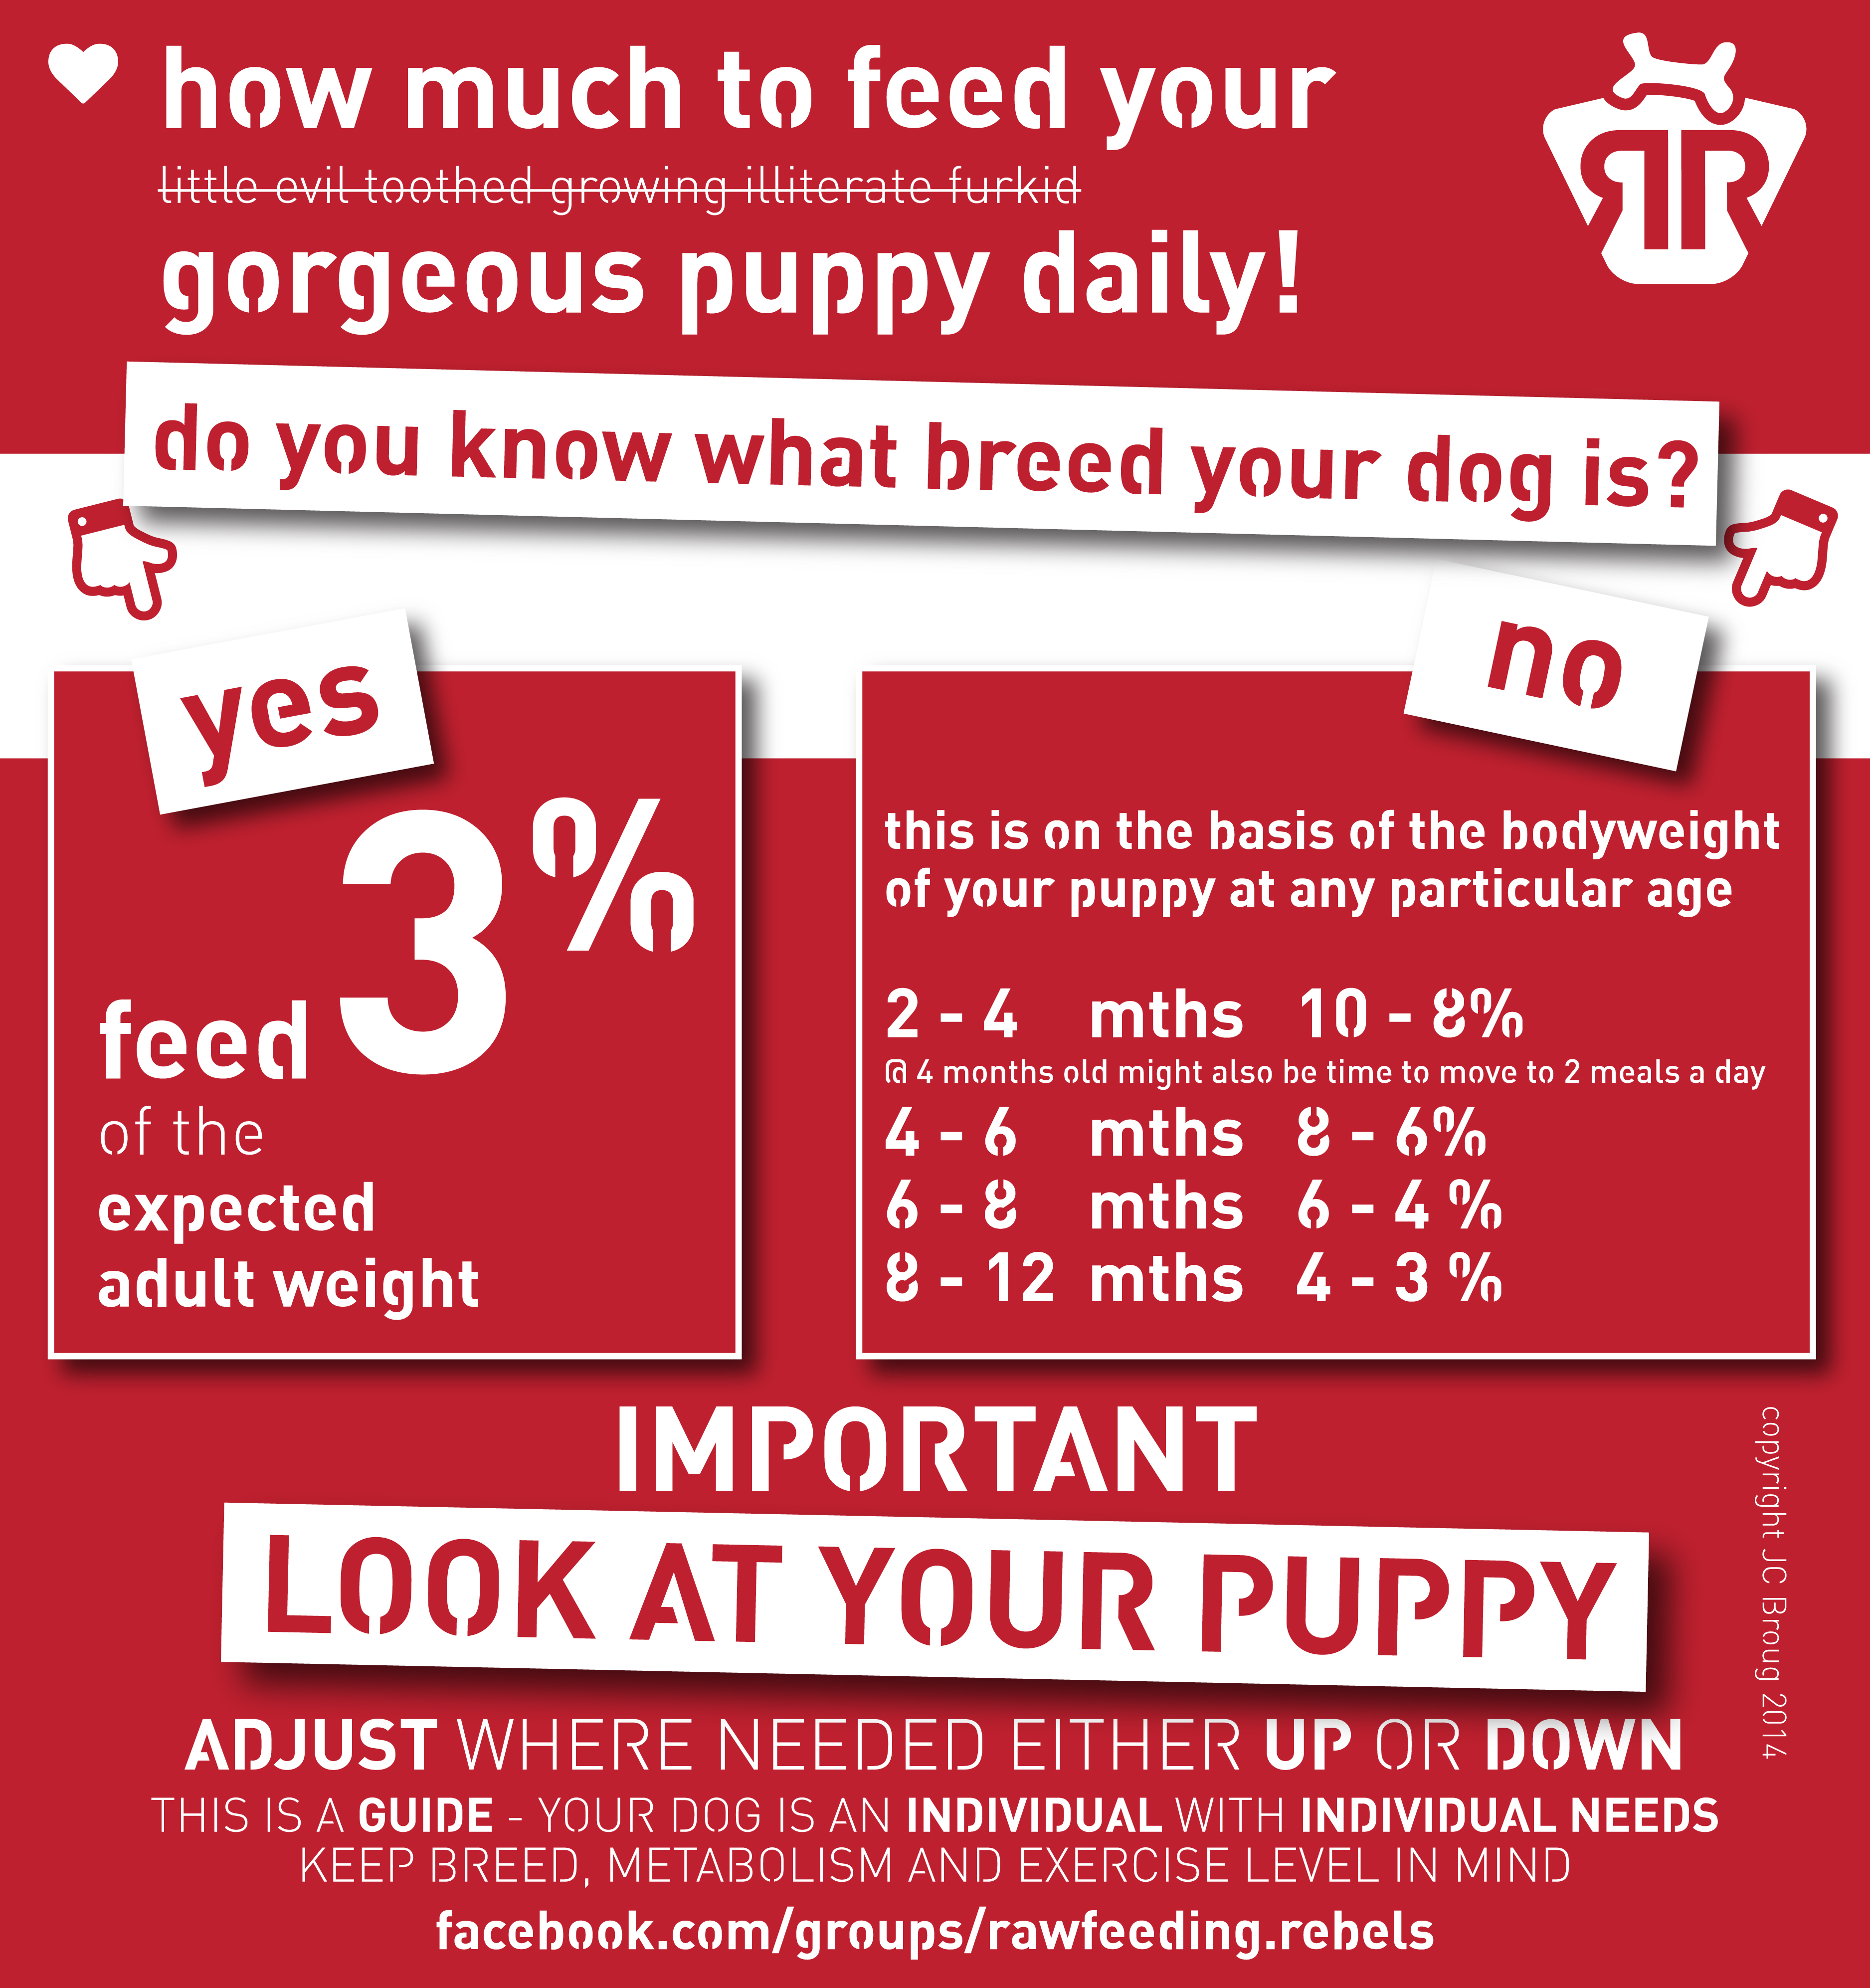 raw feeding puppy guide